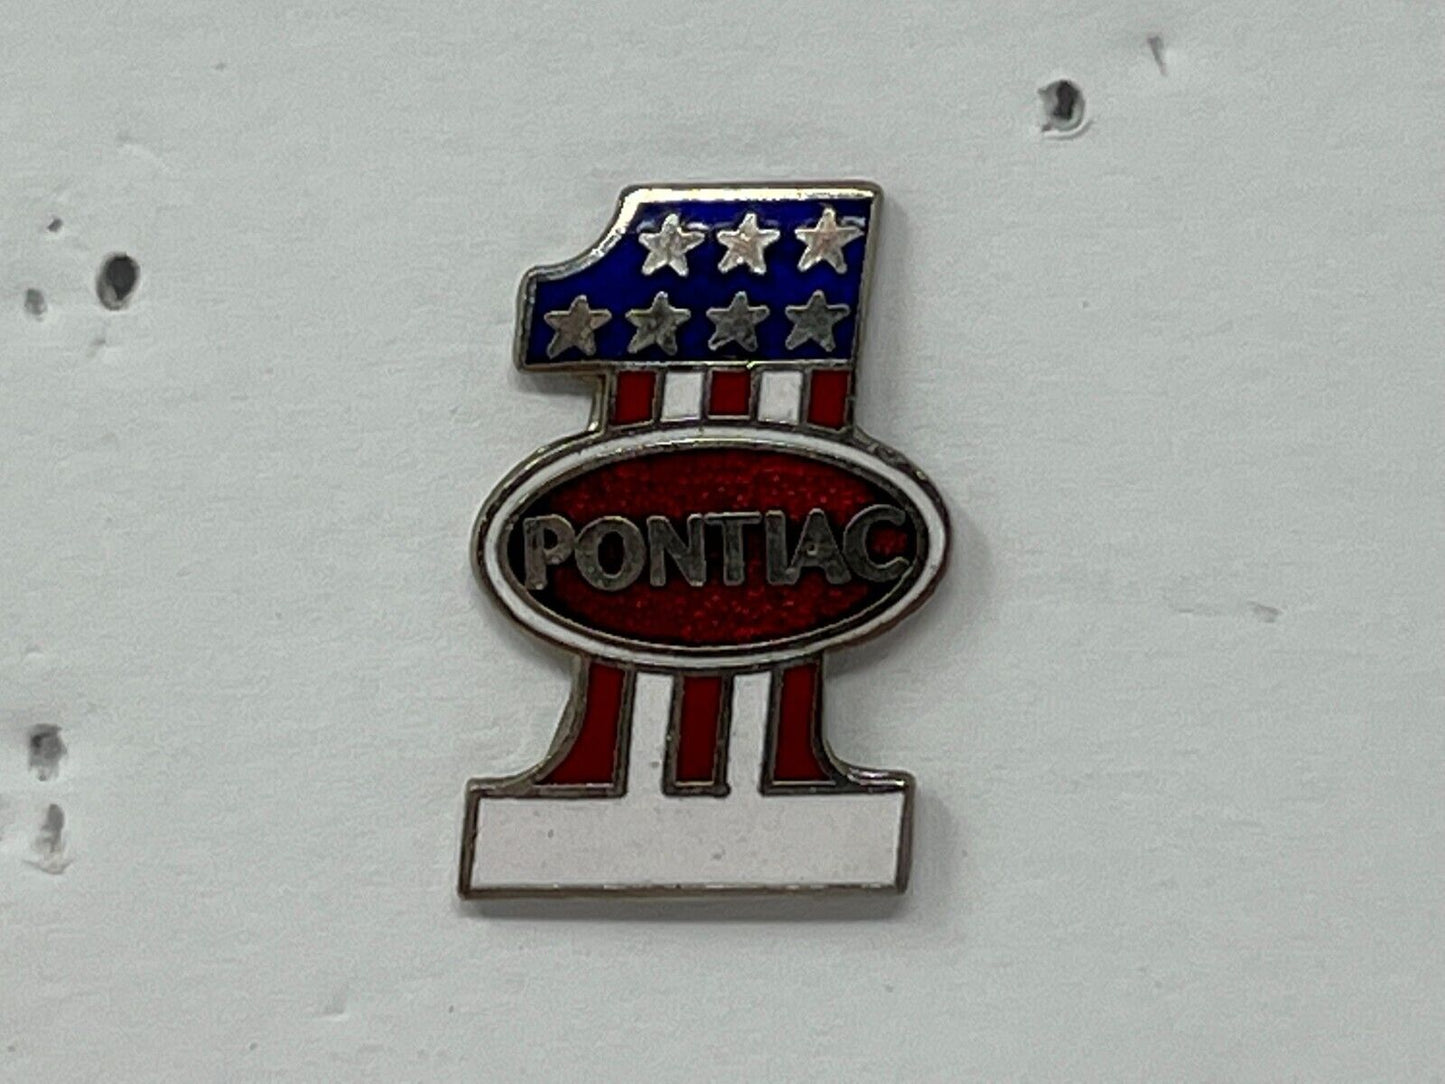 Pontiac 1 Automotive Lapel Pin